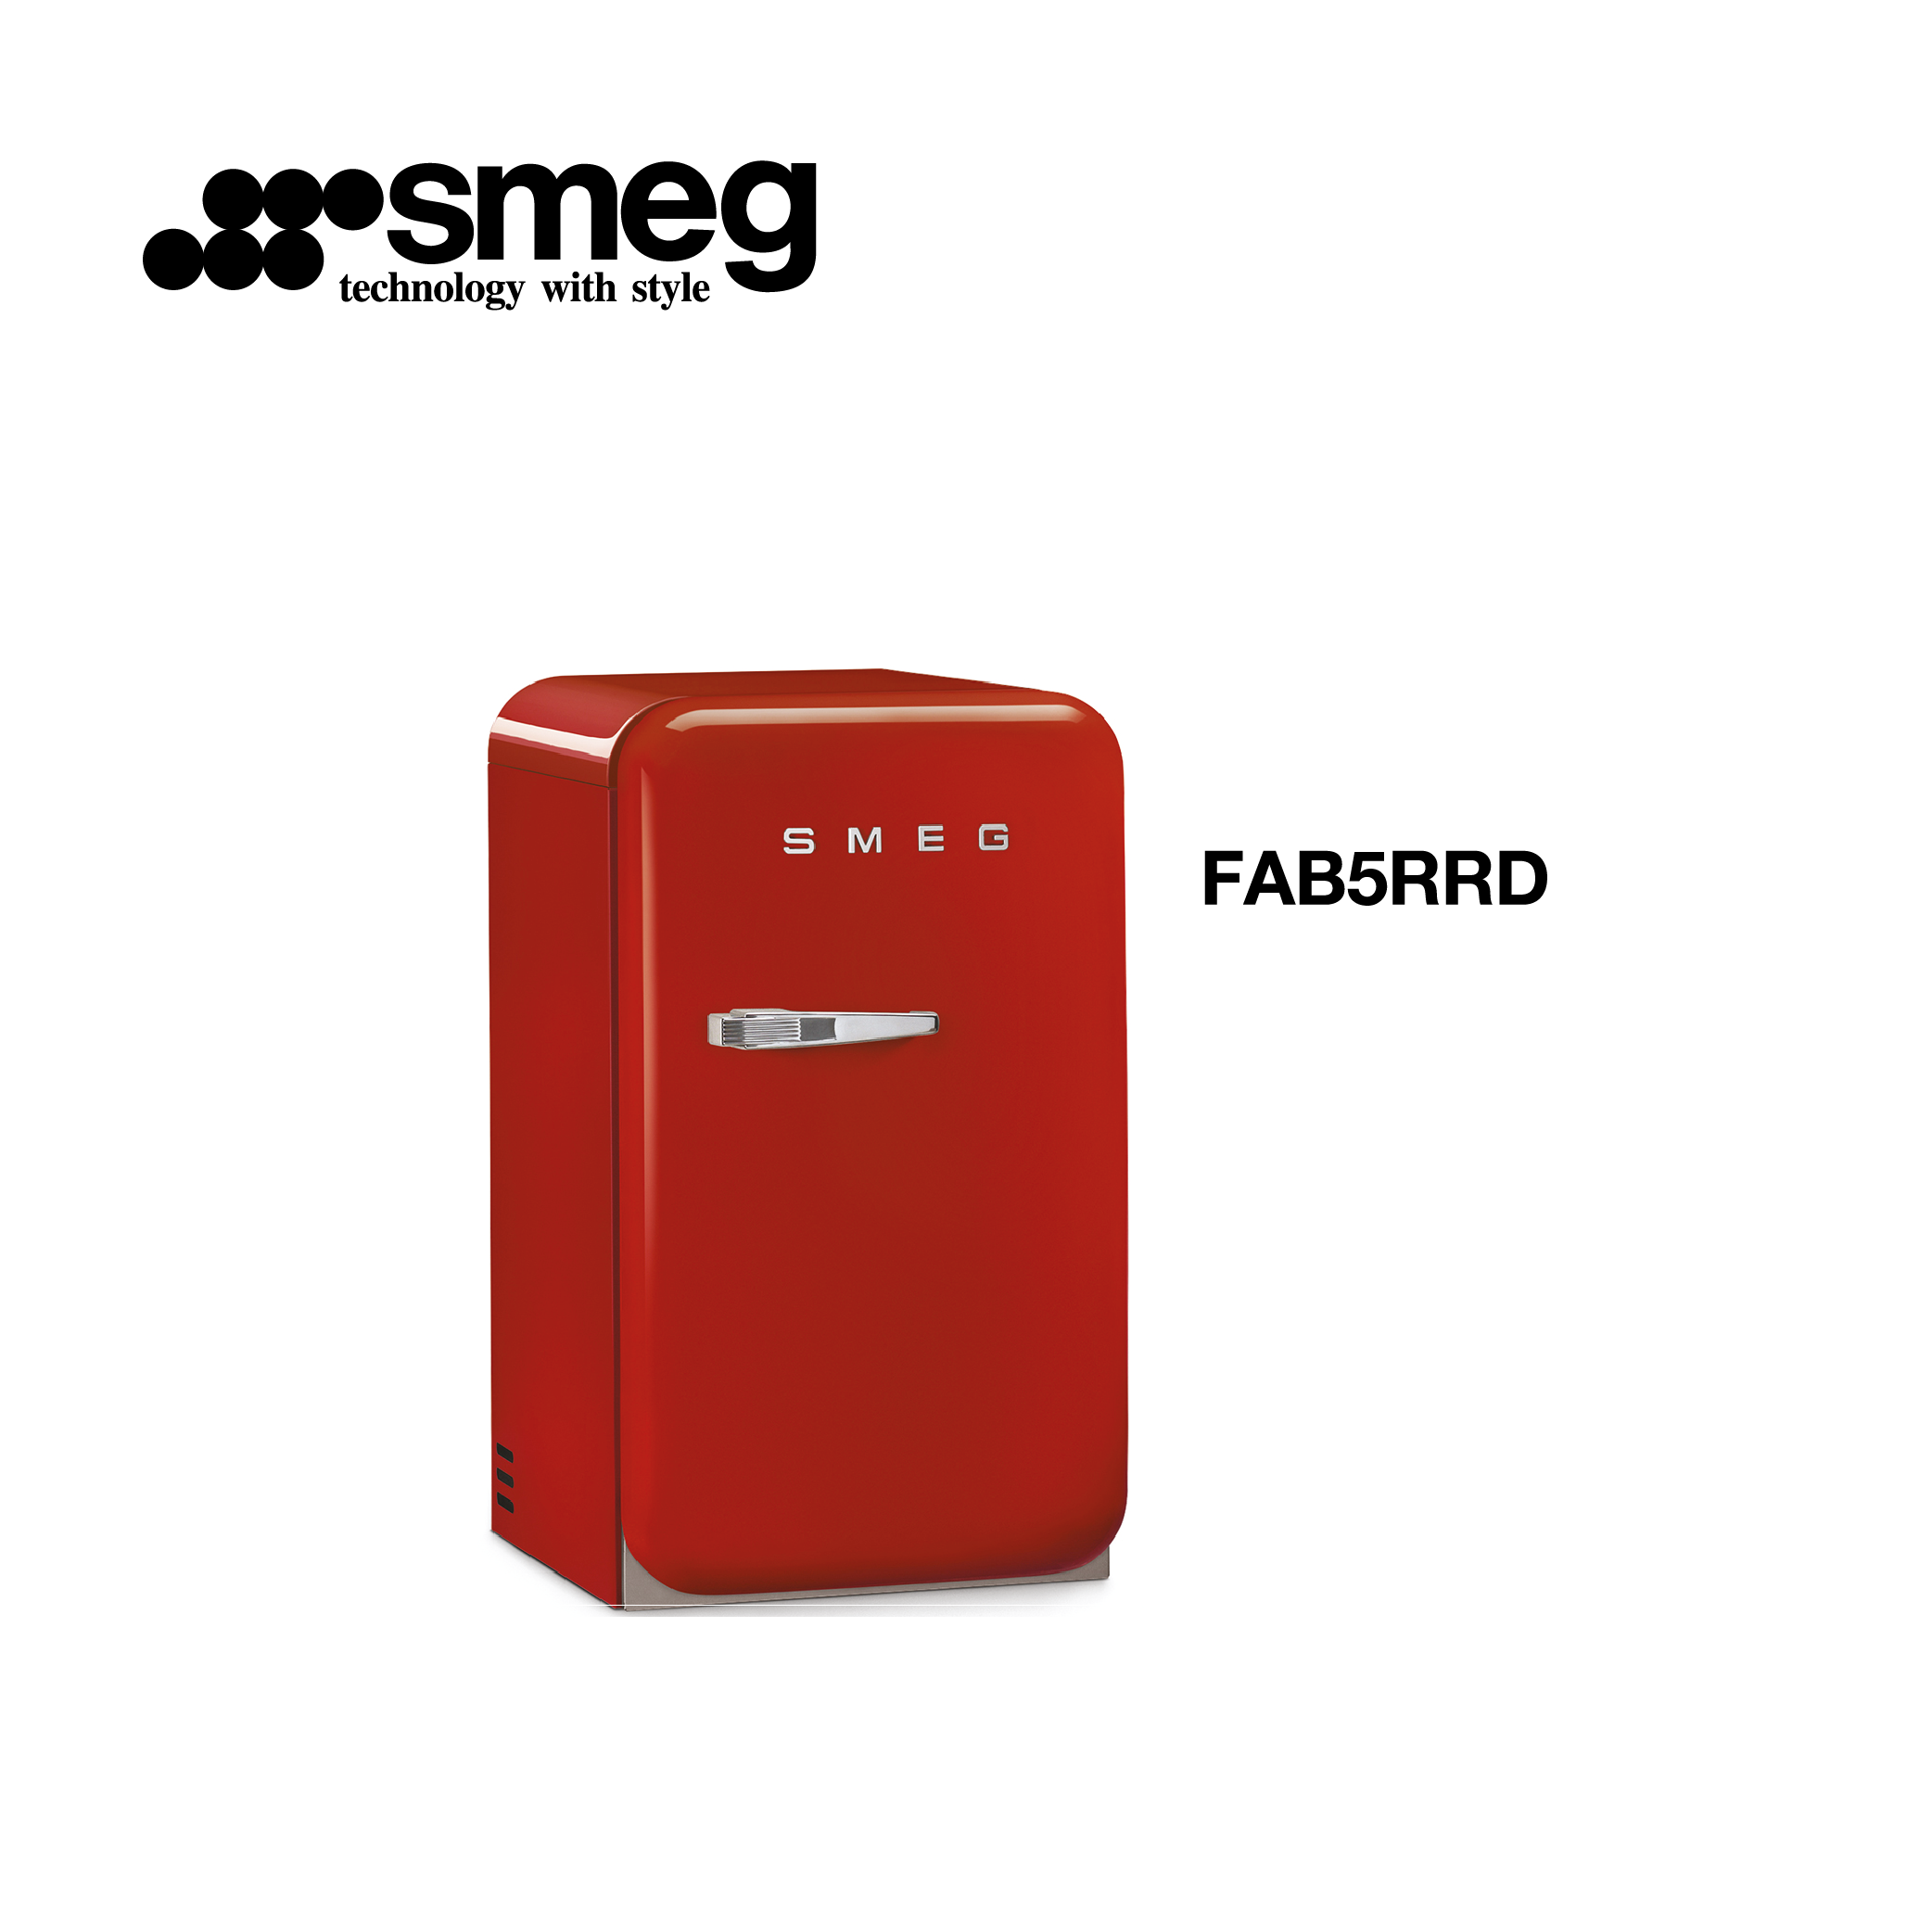 minibar refrigerateur congelateur couleur Rouge style vintage FAB5RRD